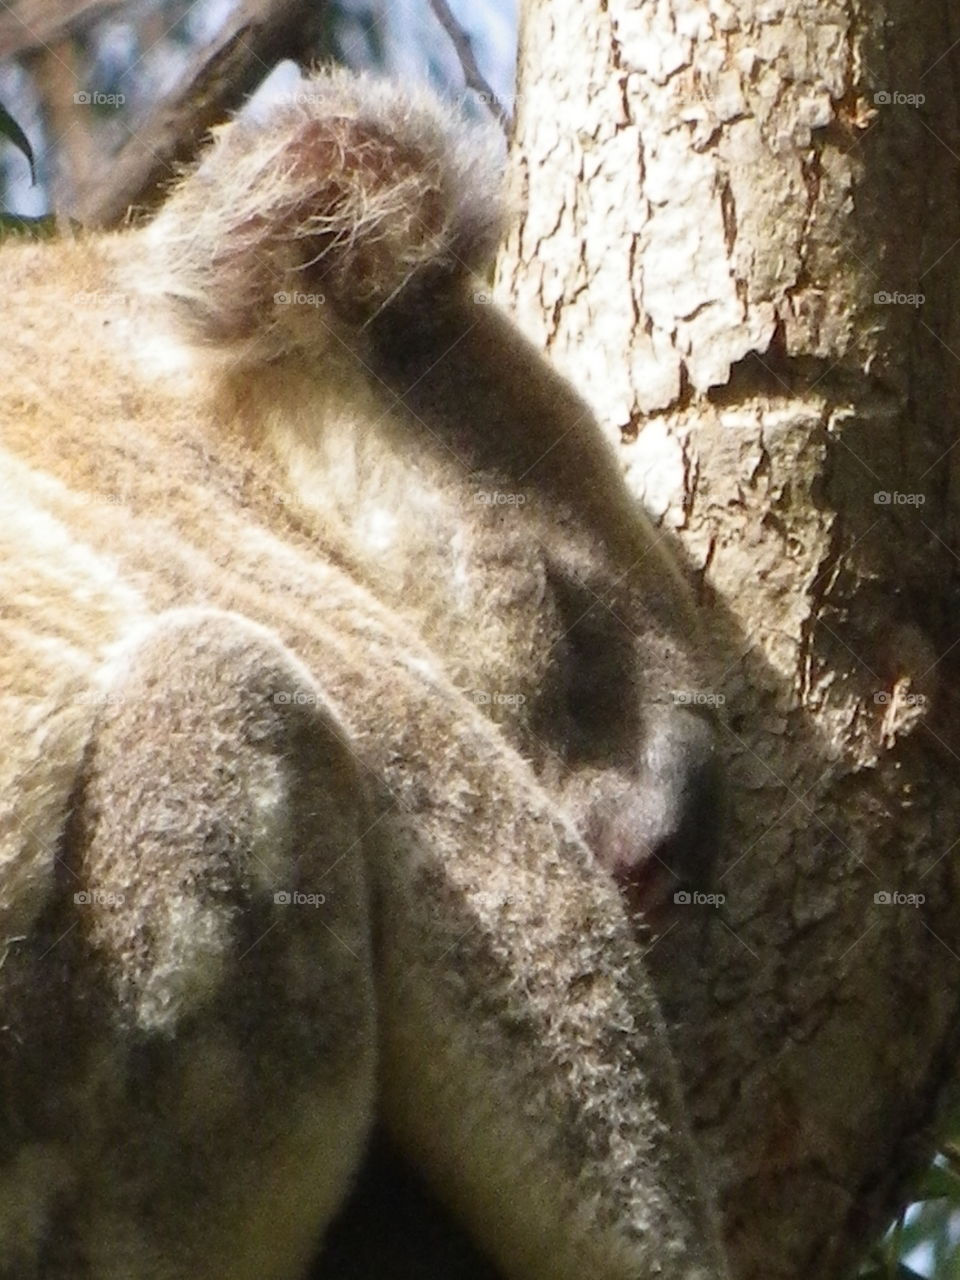 Cute cuddly Koala bear in a tree